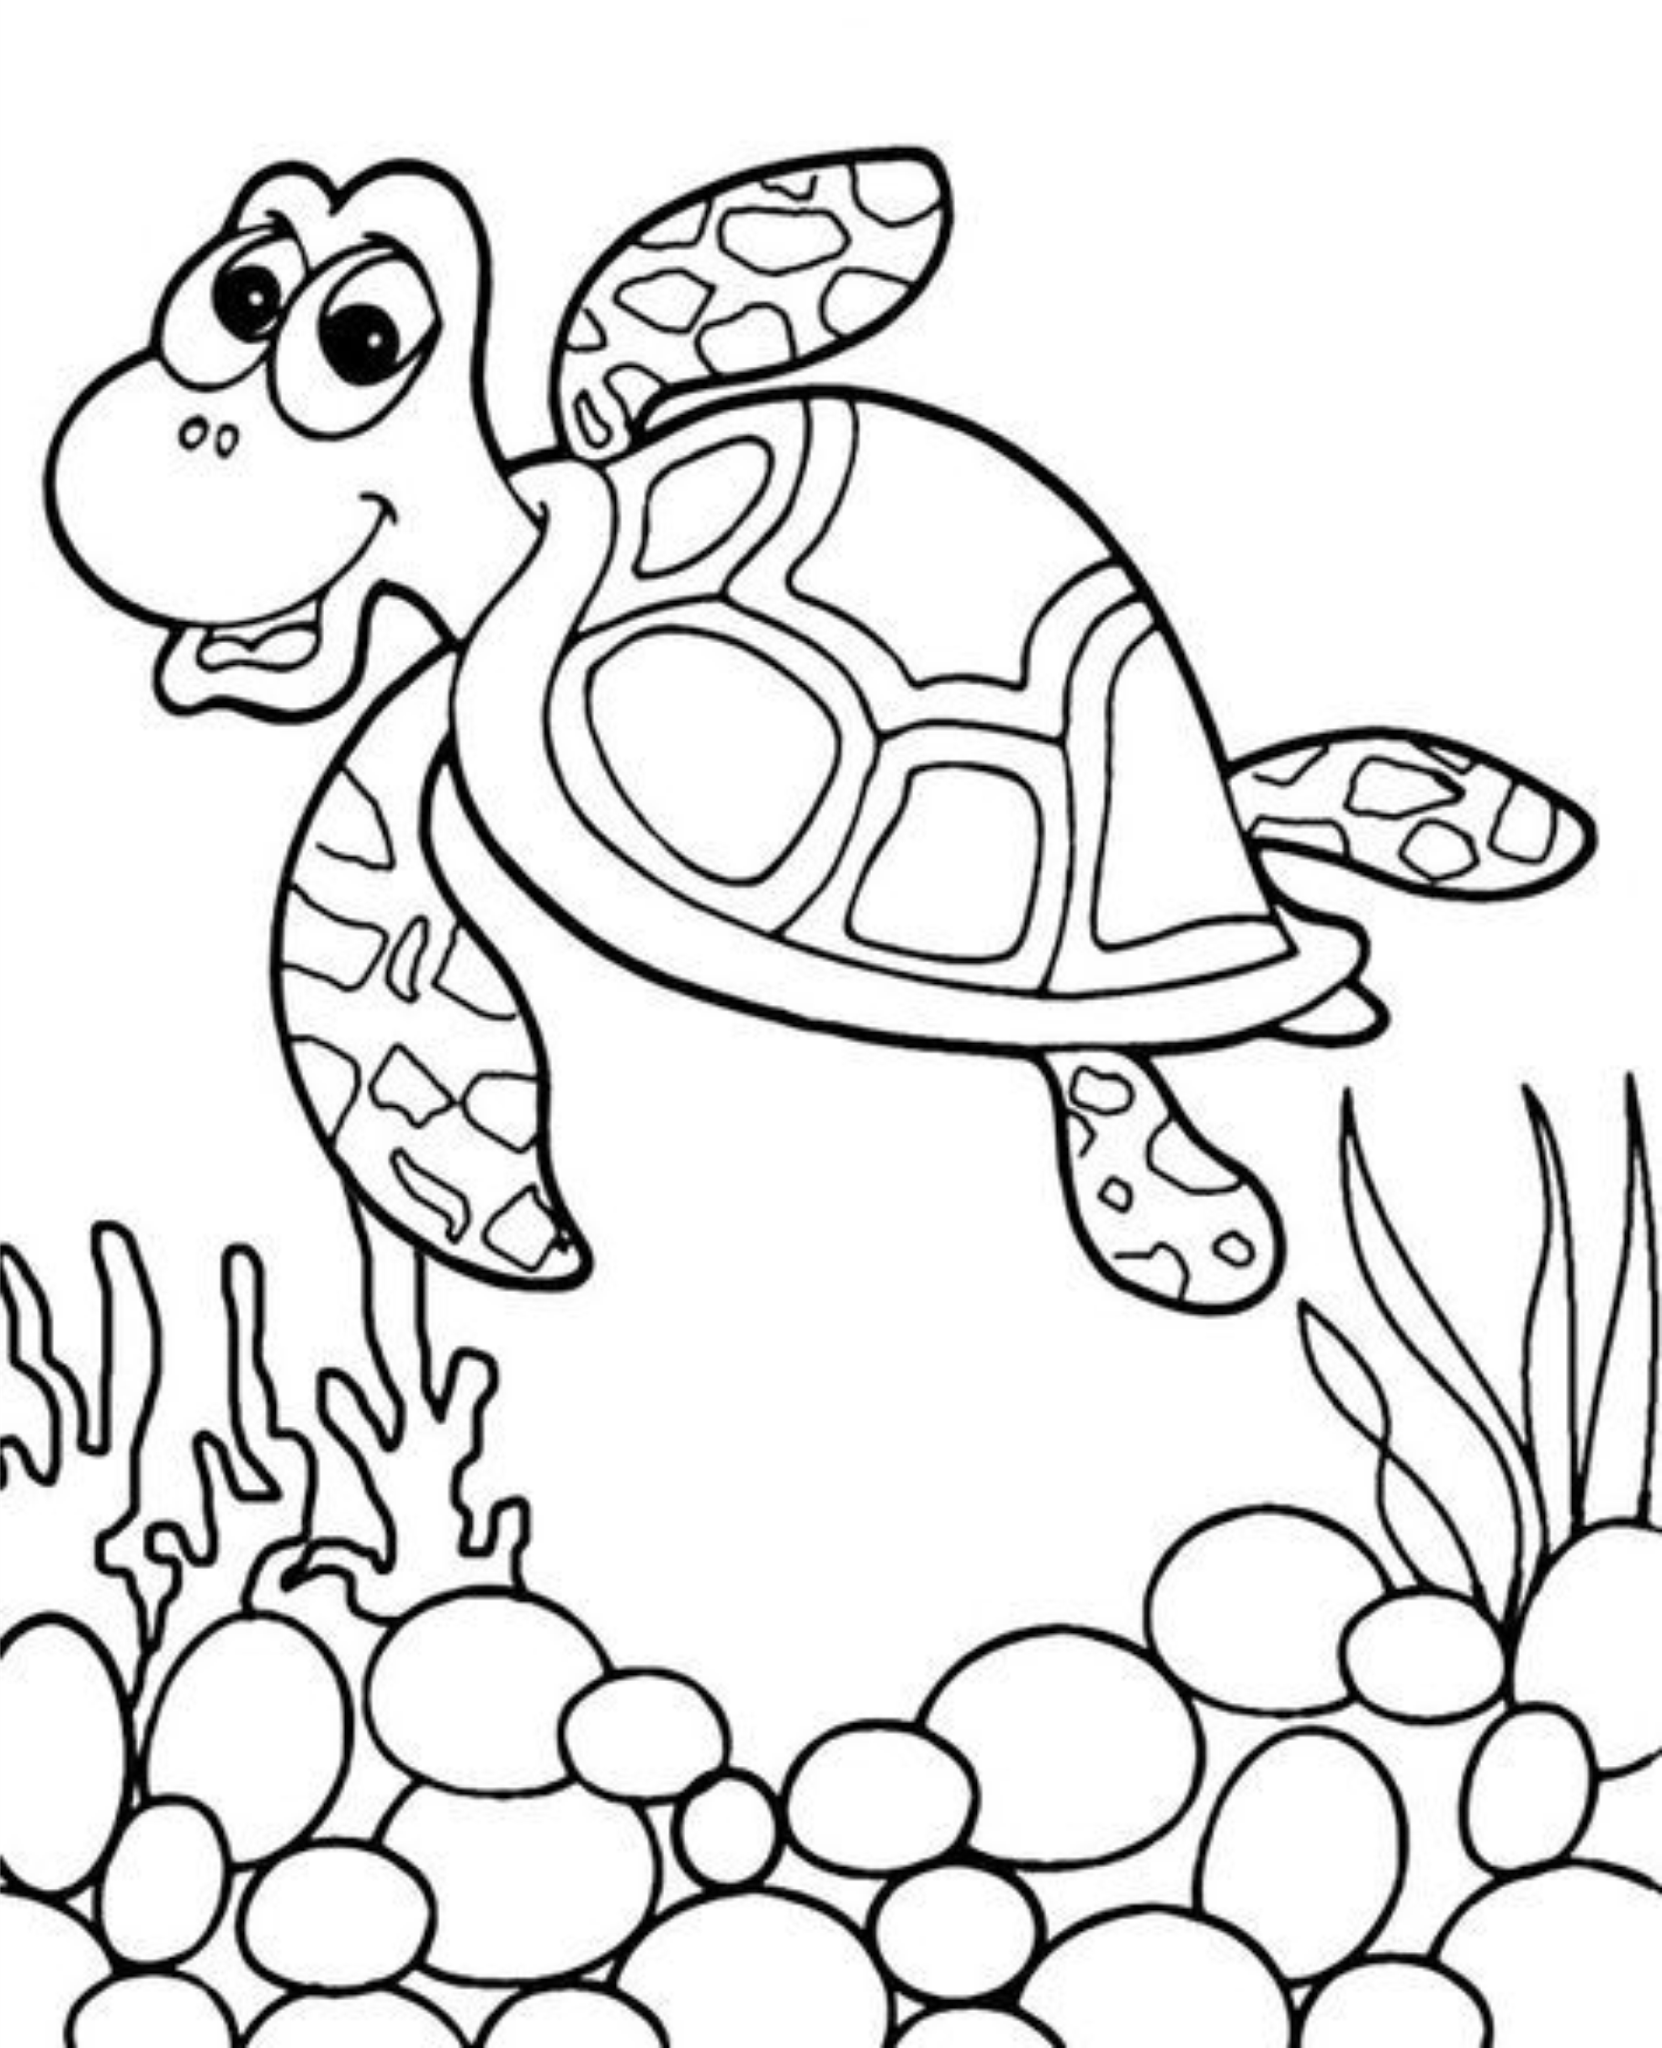 Распечатать картинку черепаха. Раскраска черепаха. Черепаха раскраска для детей. Черепашка раскраска для малышей. Раскраска черепашка для детей 3-4 лет.